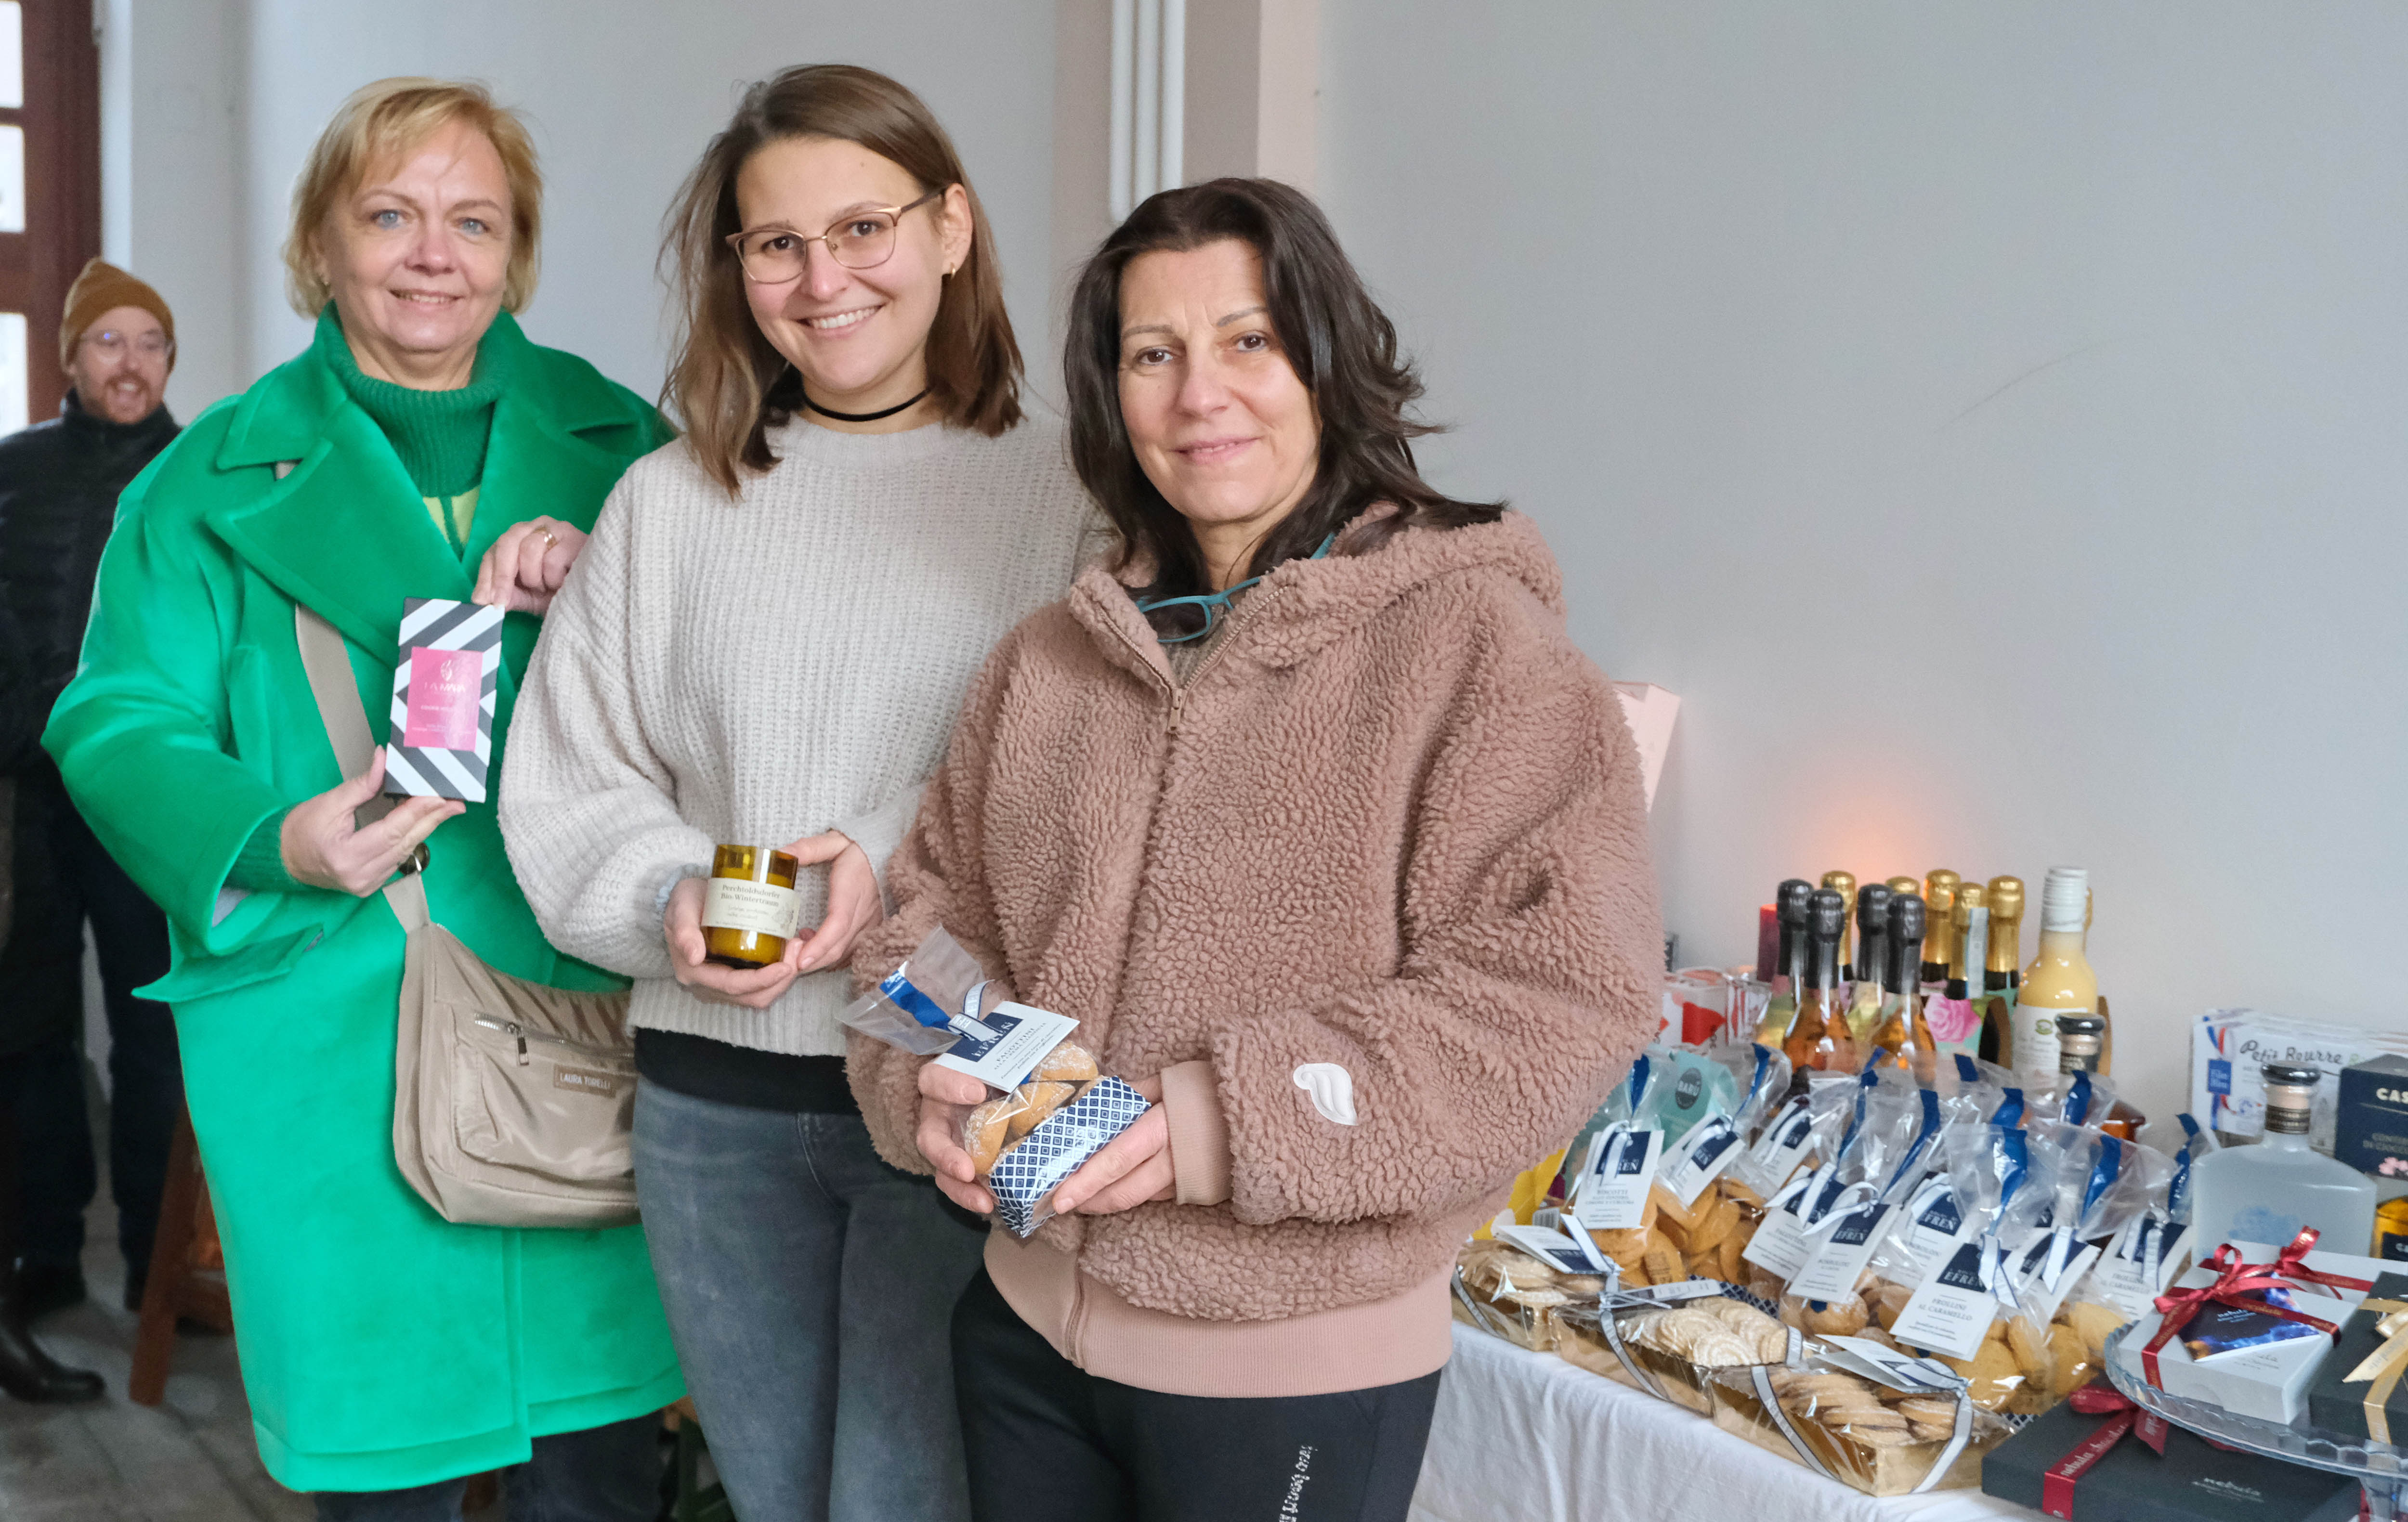 Schokolade, Kekse und edle Pralinen gabs bei Alexandra und Renate Neubauer